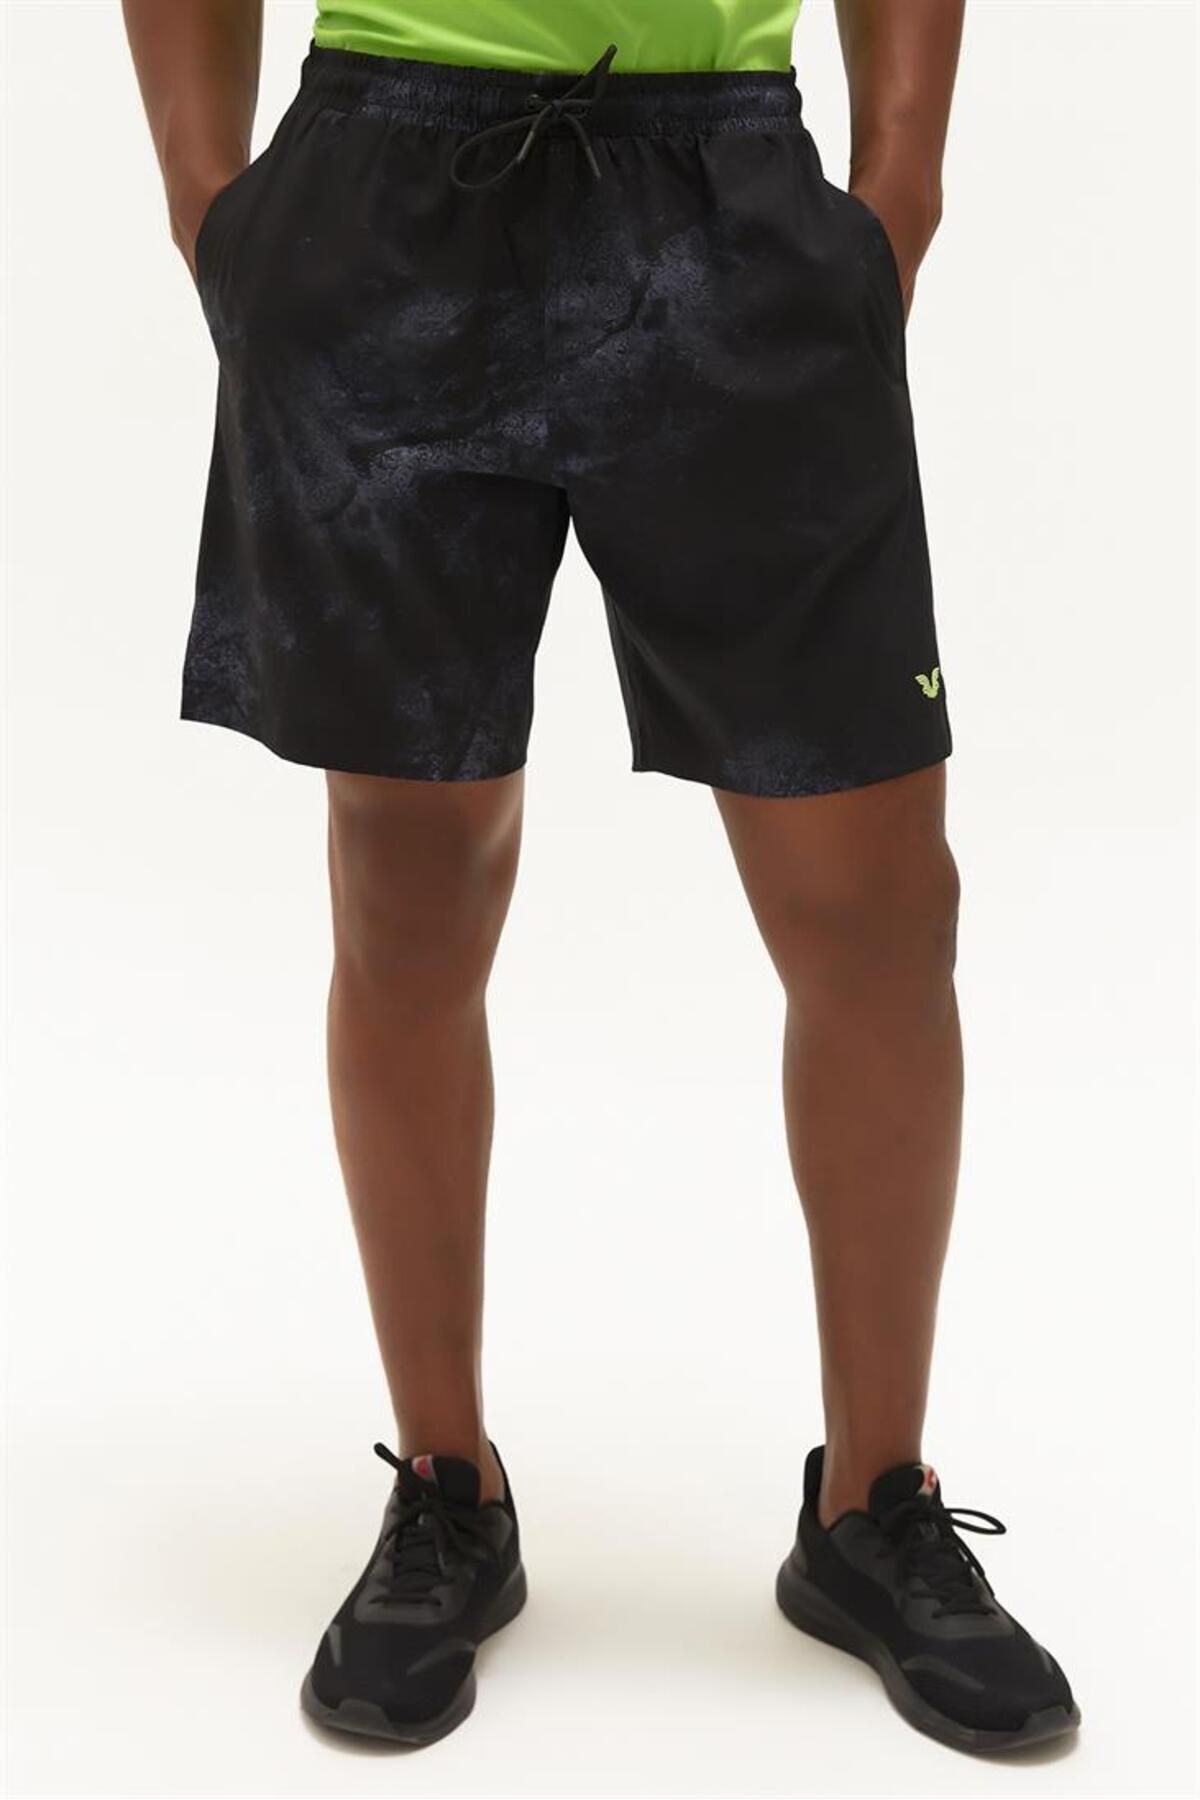 bilcee Erkek Siyah Desenli Ince Dokuma Kumaşlı Cepli Kısa Mini Antrenman Koşu Sporcu Şortu 0173